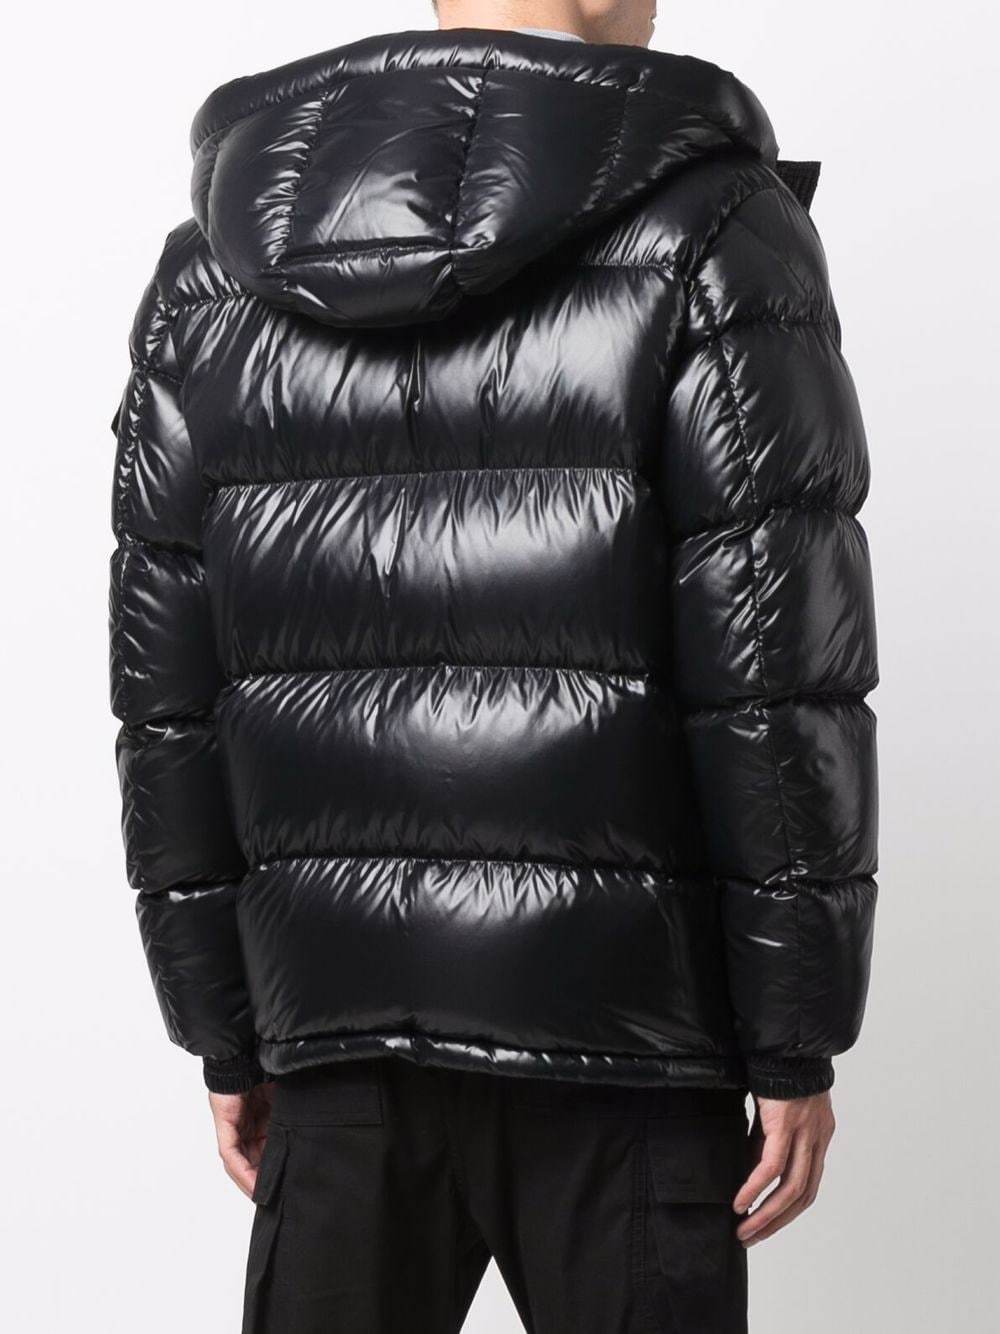 Moncler Ecrins Hooded Padded Jacket Black - MAISONDEFASHION.COM